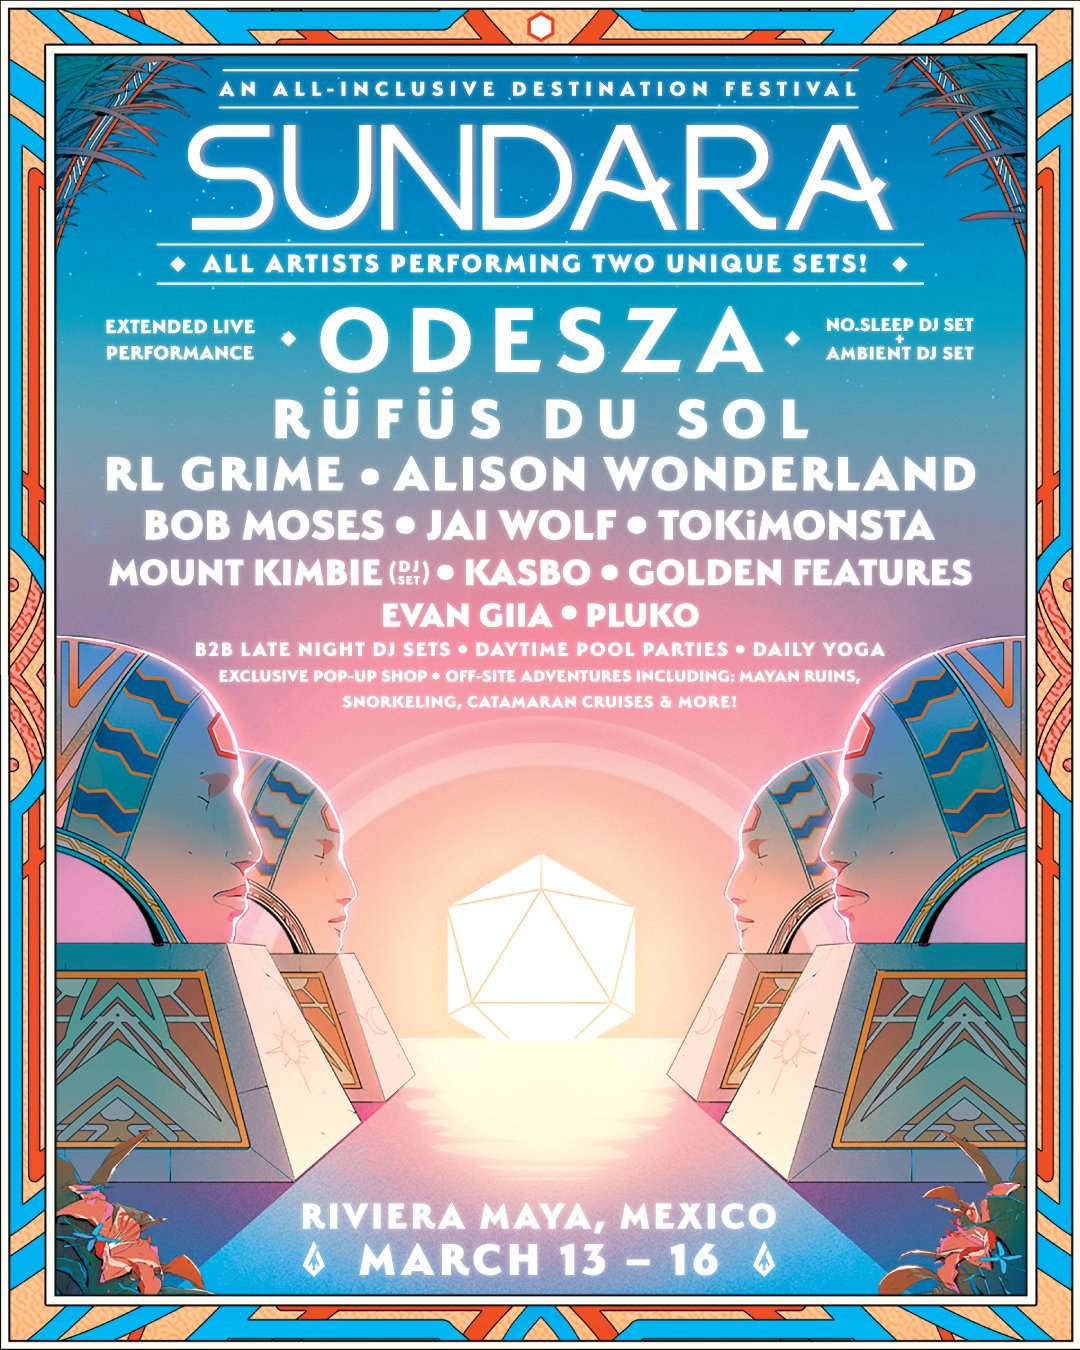 Sundara 2019 Lineup